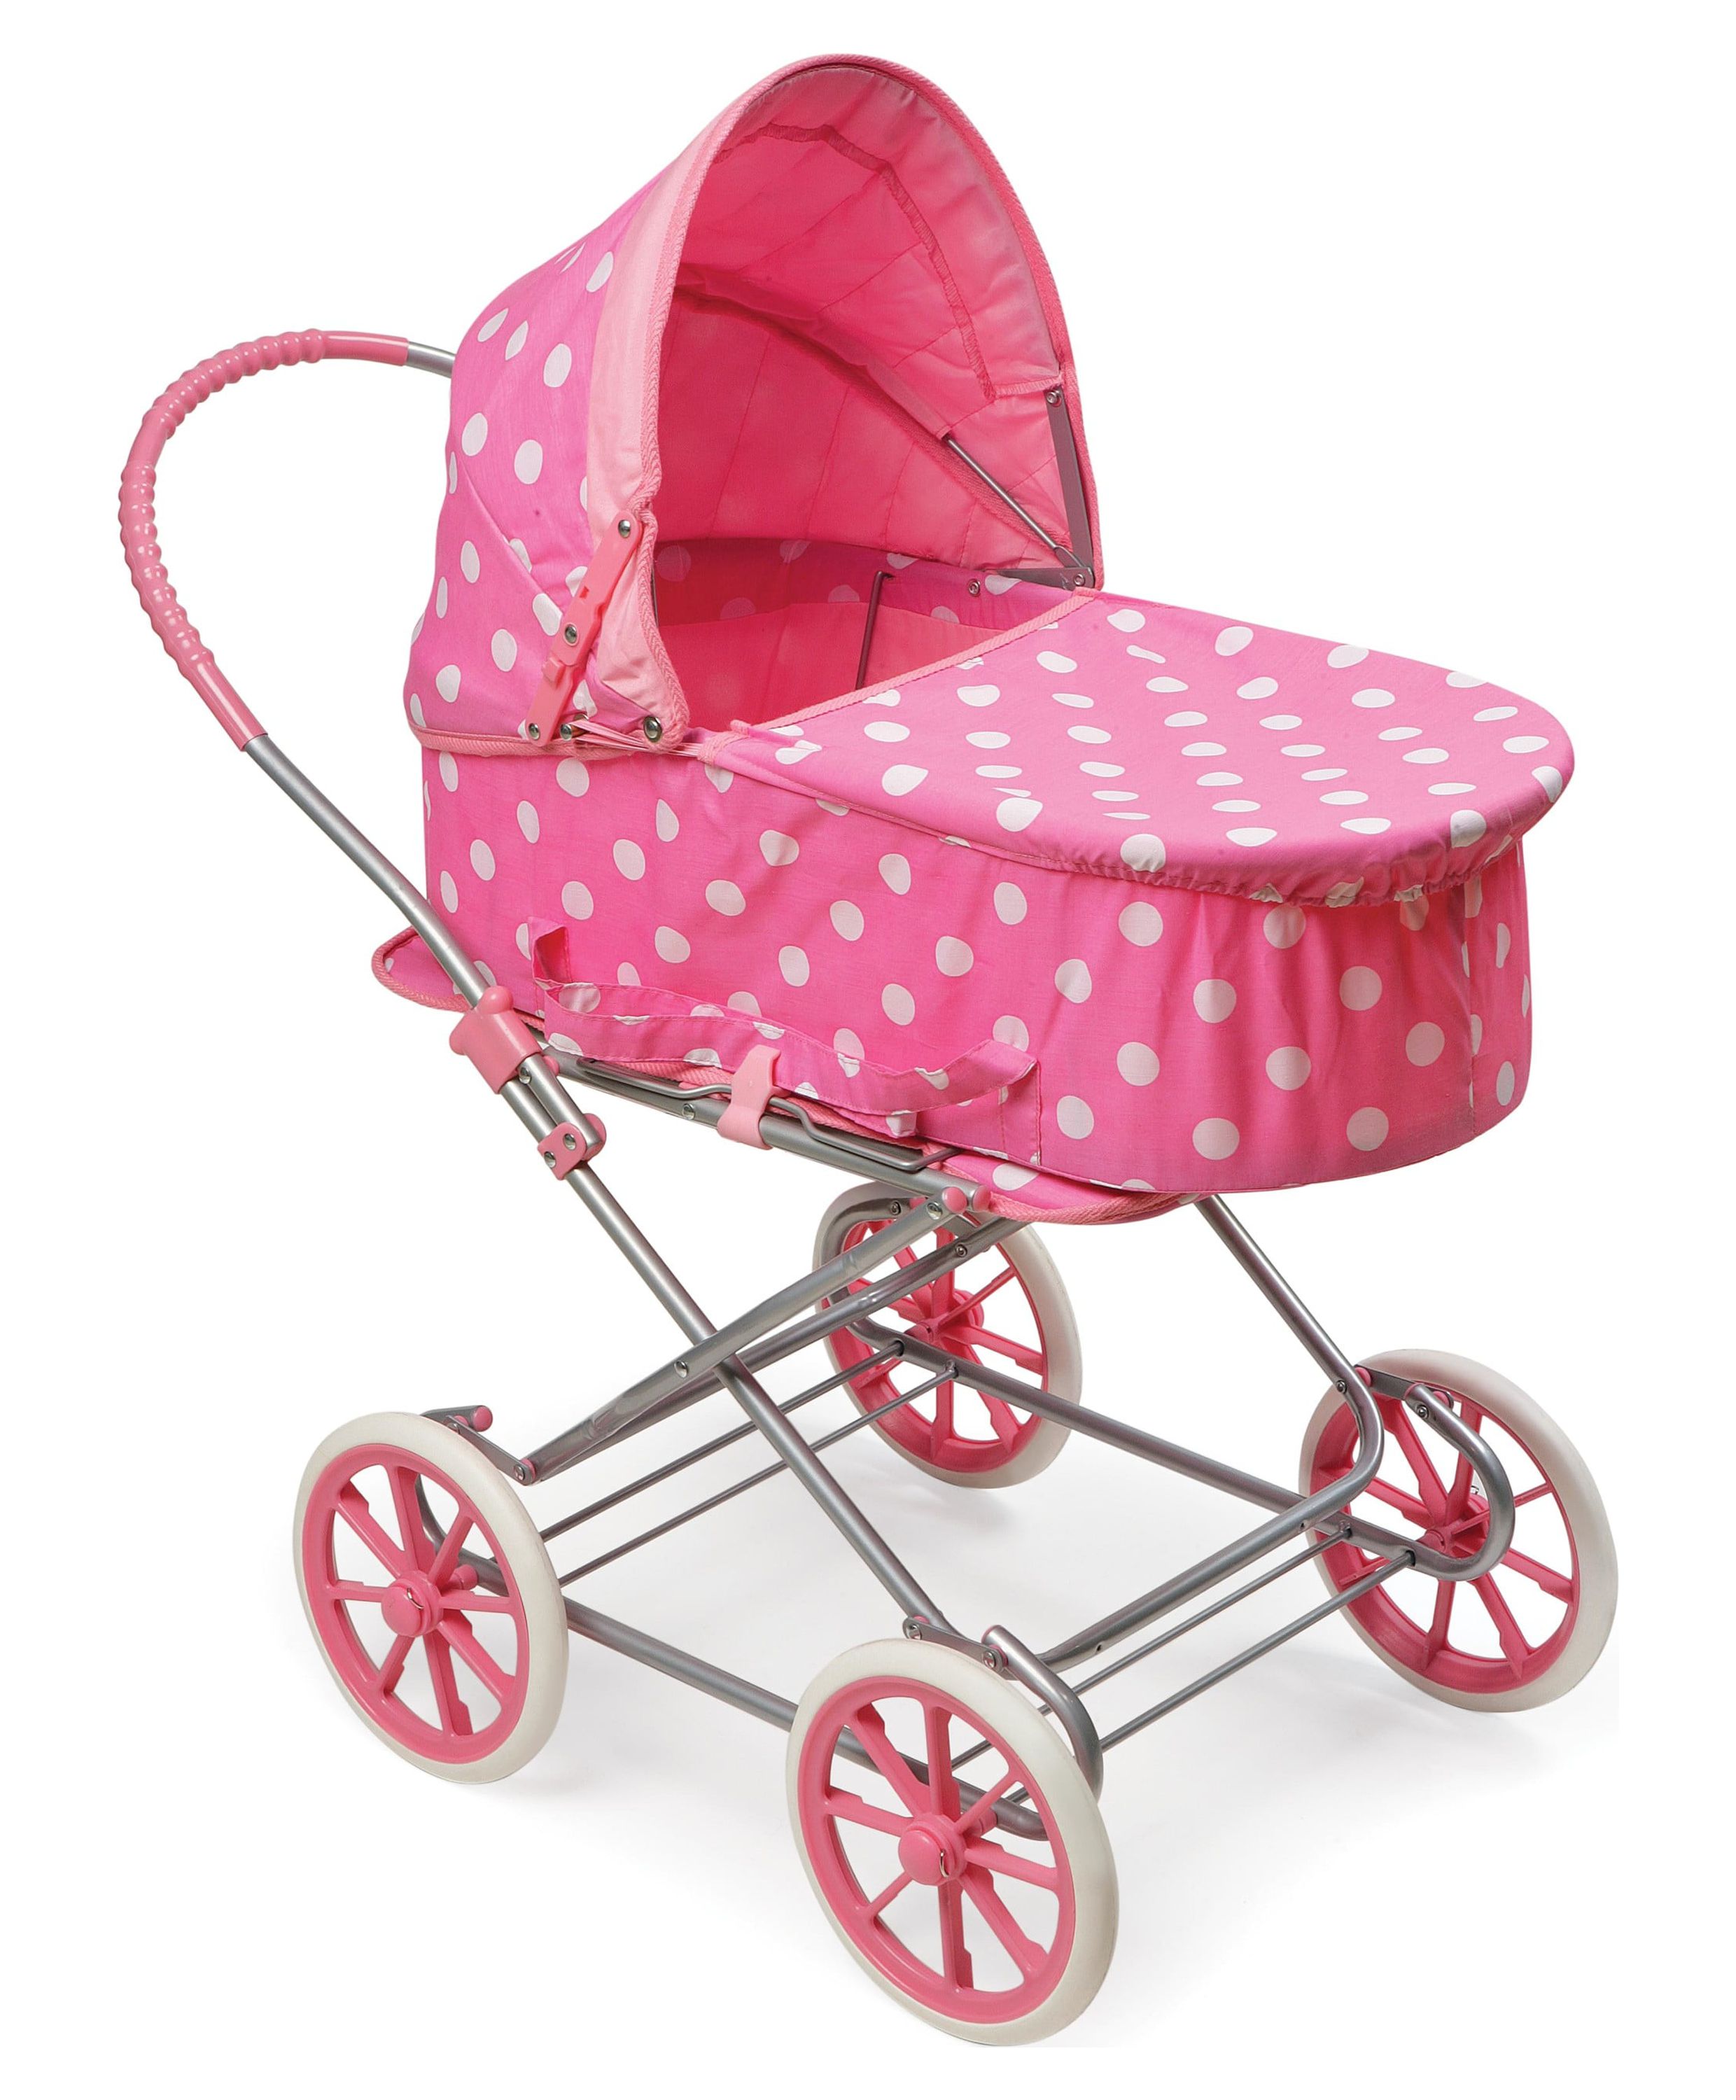 Badger Basket Just Like Mommy 3-in-1 Doll Pram/Carrier/Stroller - Pink/Polka Dots - image 1 of 13